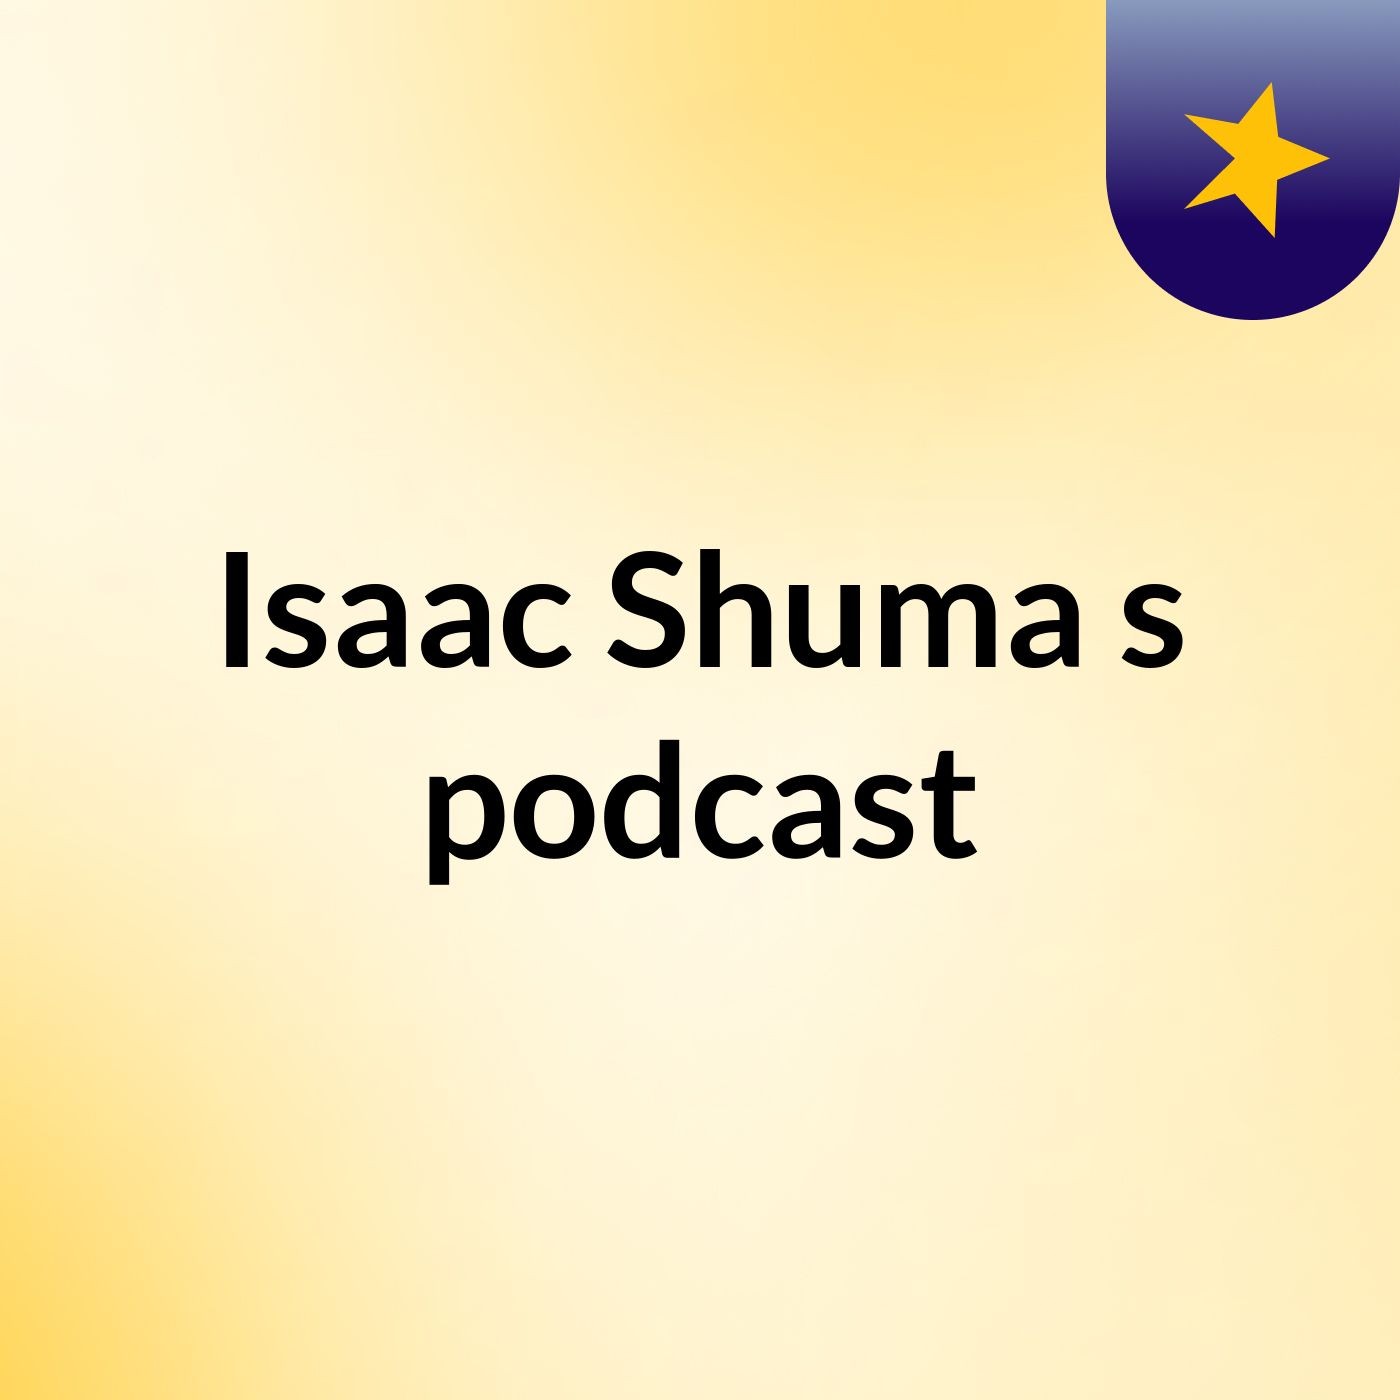 Isaac Shuma's podcast